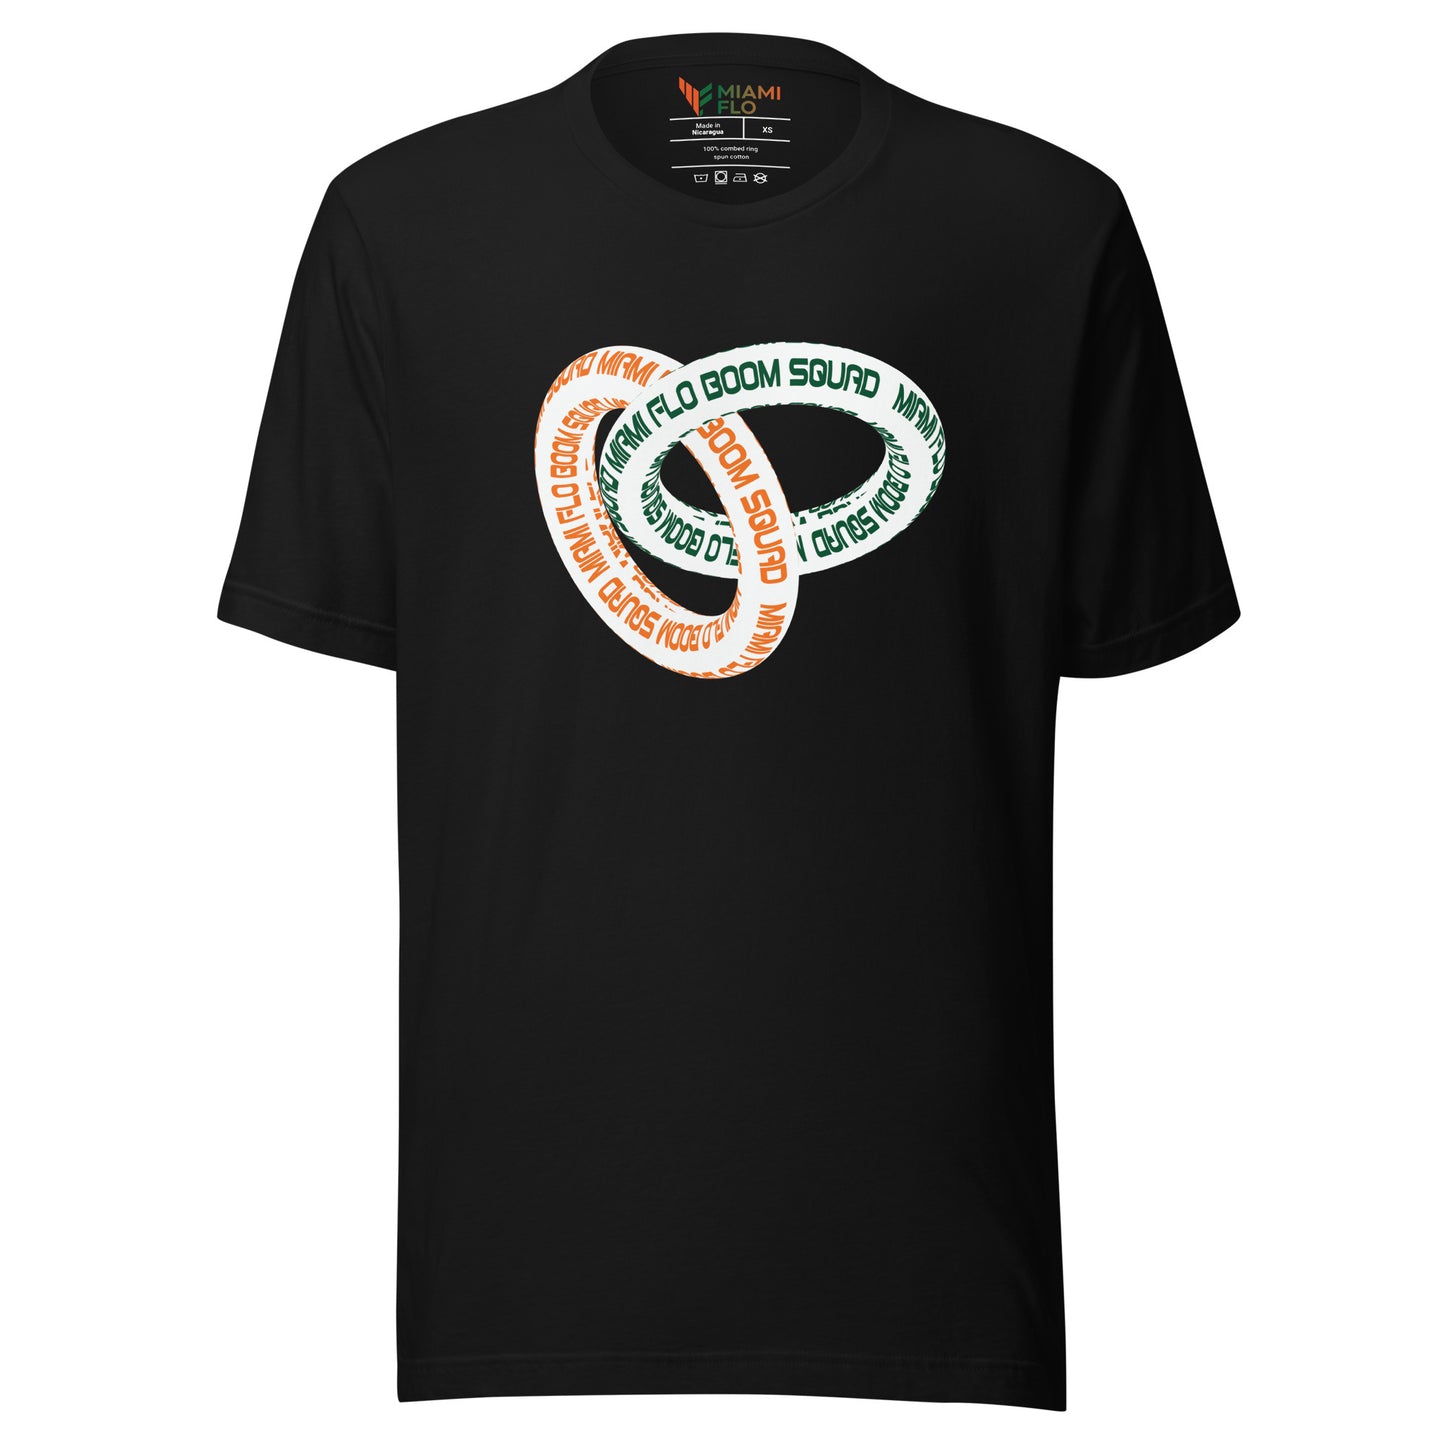 Miami Flo Boom Squad Rings Shirt - Designed by Jas